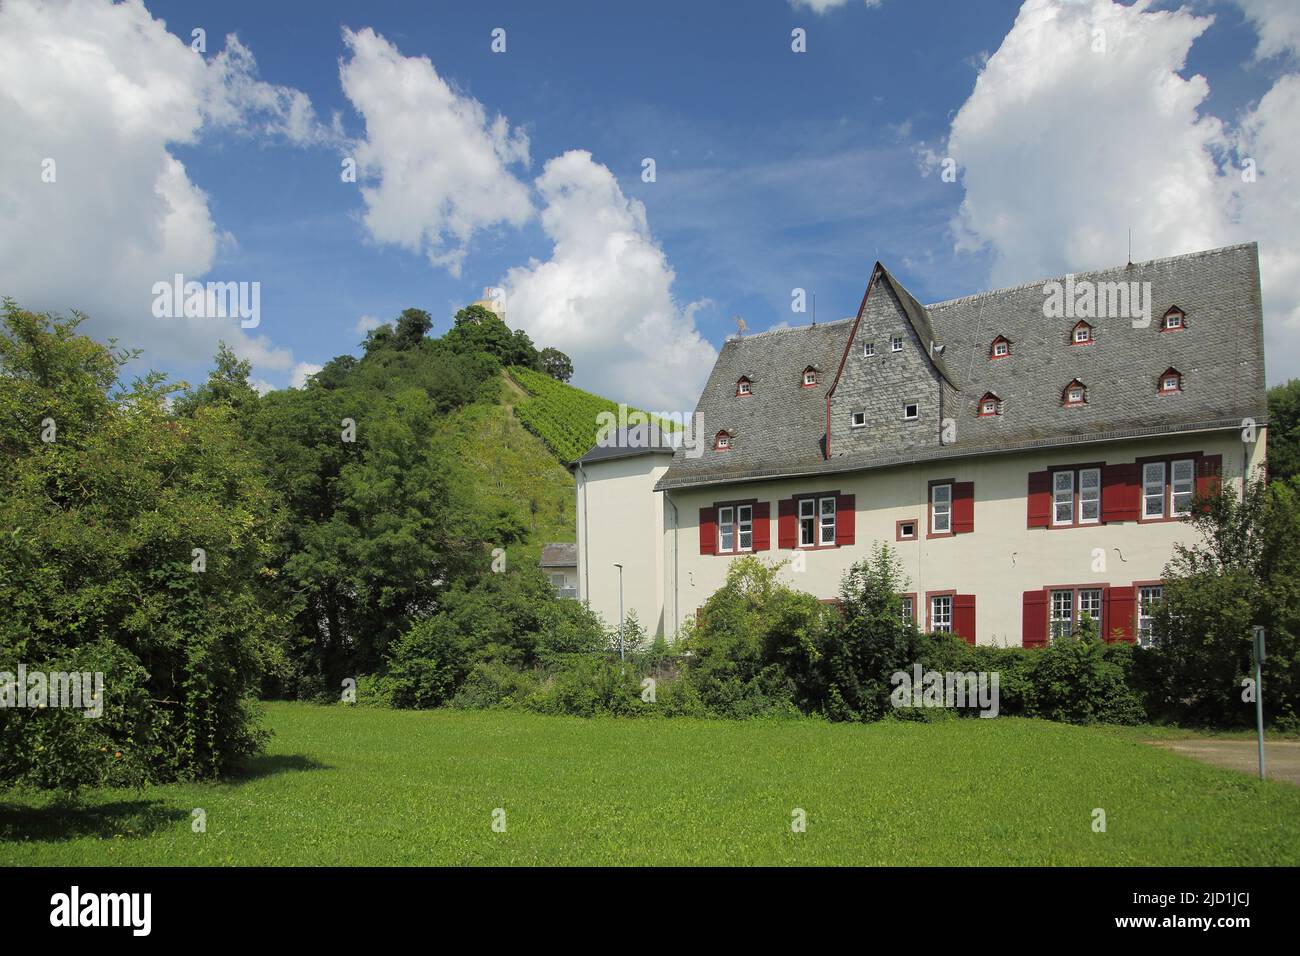 Bassenheimer Hof und Schloss Scharfenstein in Kiedrich, Rheingau, Taunus, Hessen, Deutschland Stockfoto